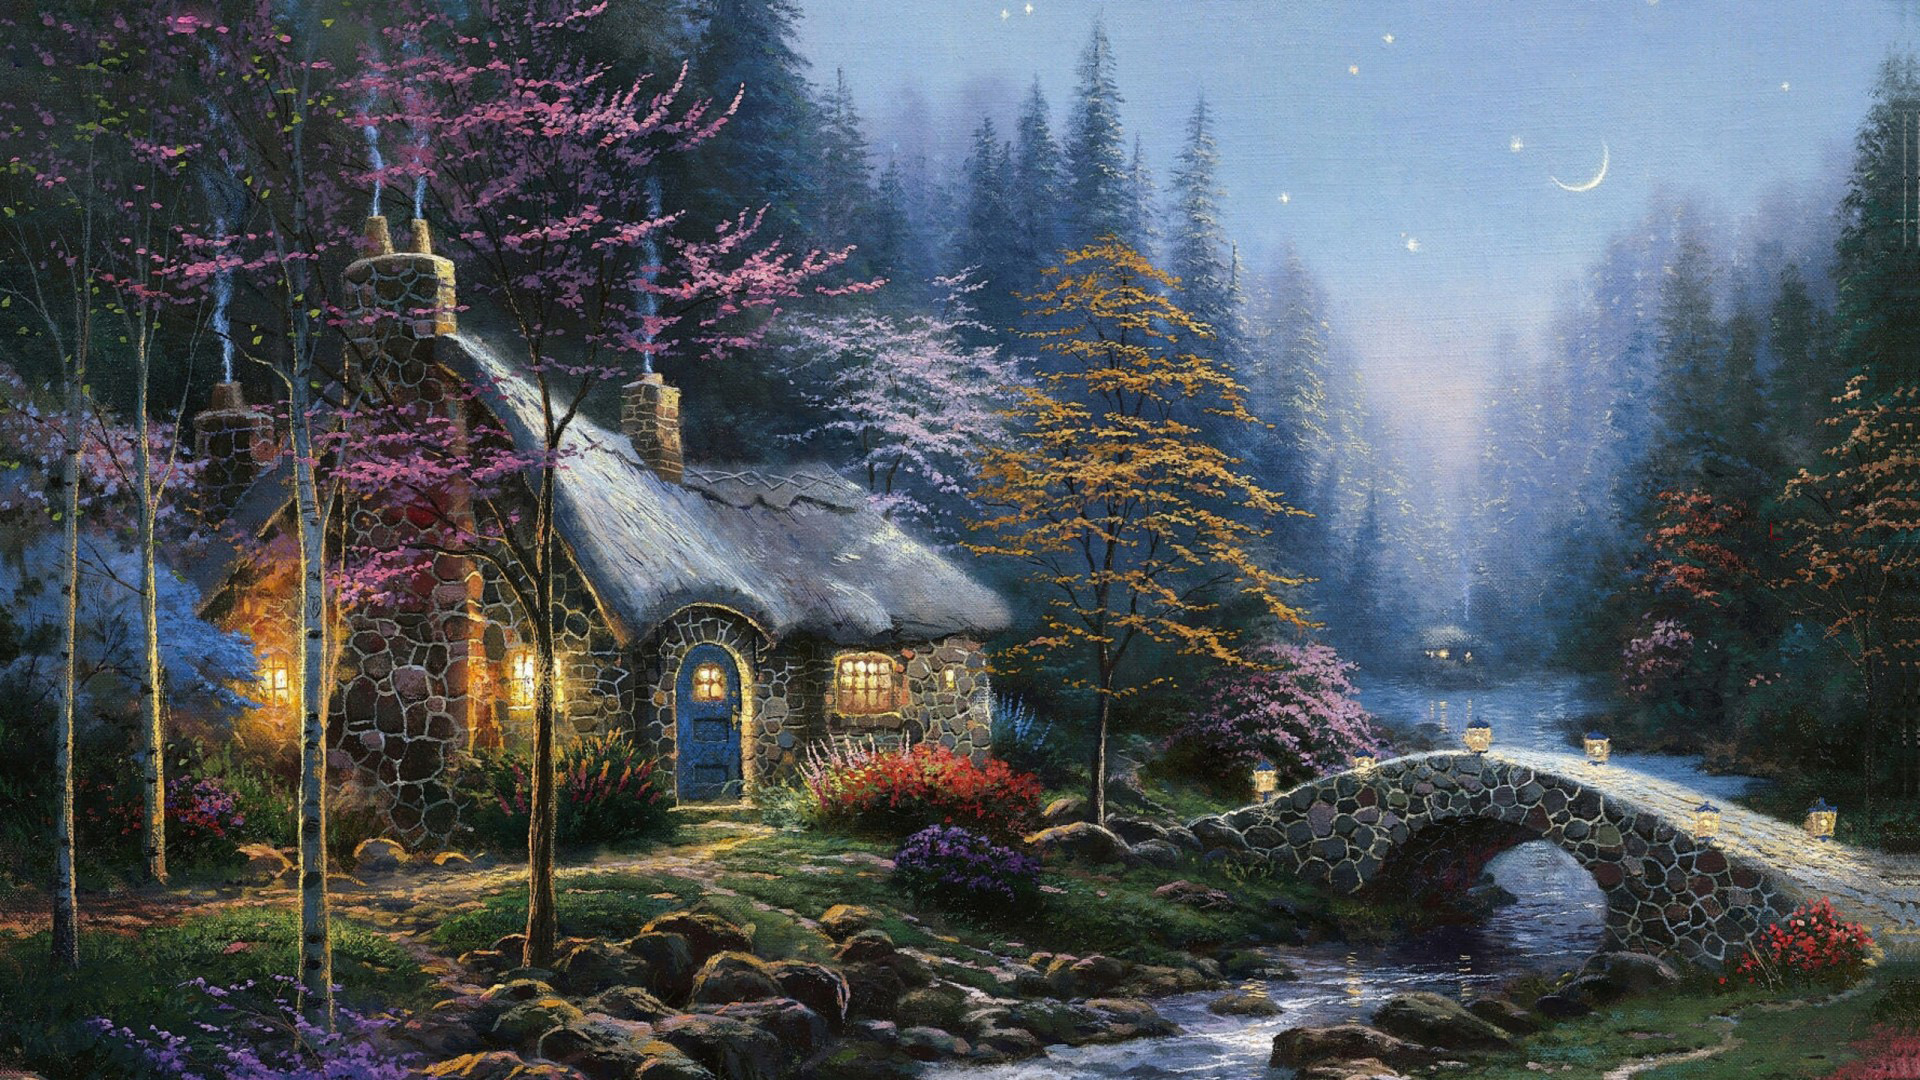 托马斯绘画,夜晚的森林,小屋,溪水,小桥,月亮,星星,意境高清壁纸